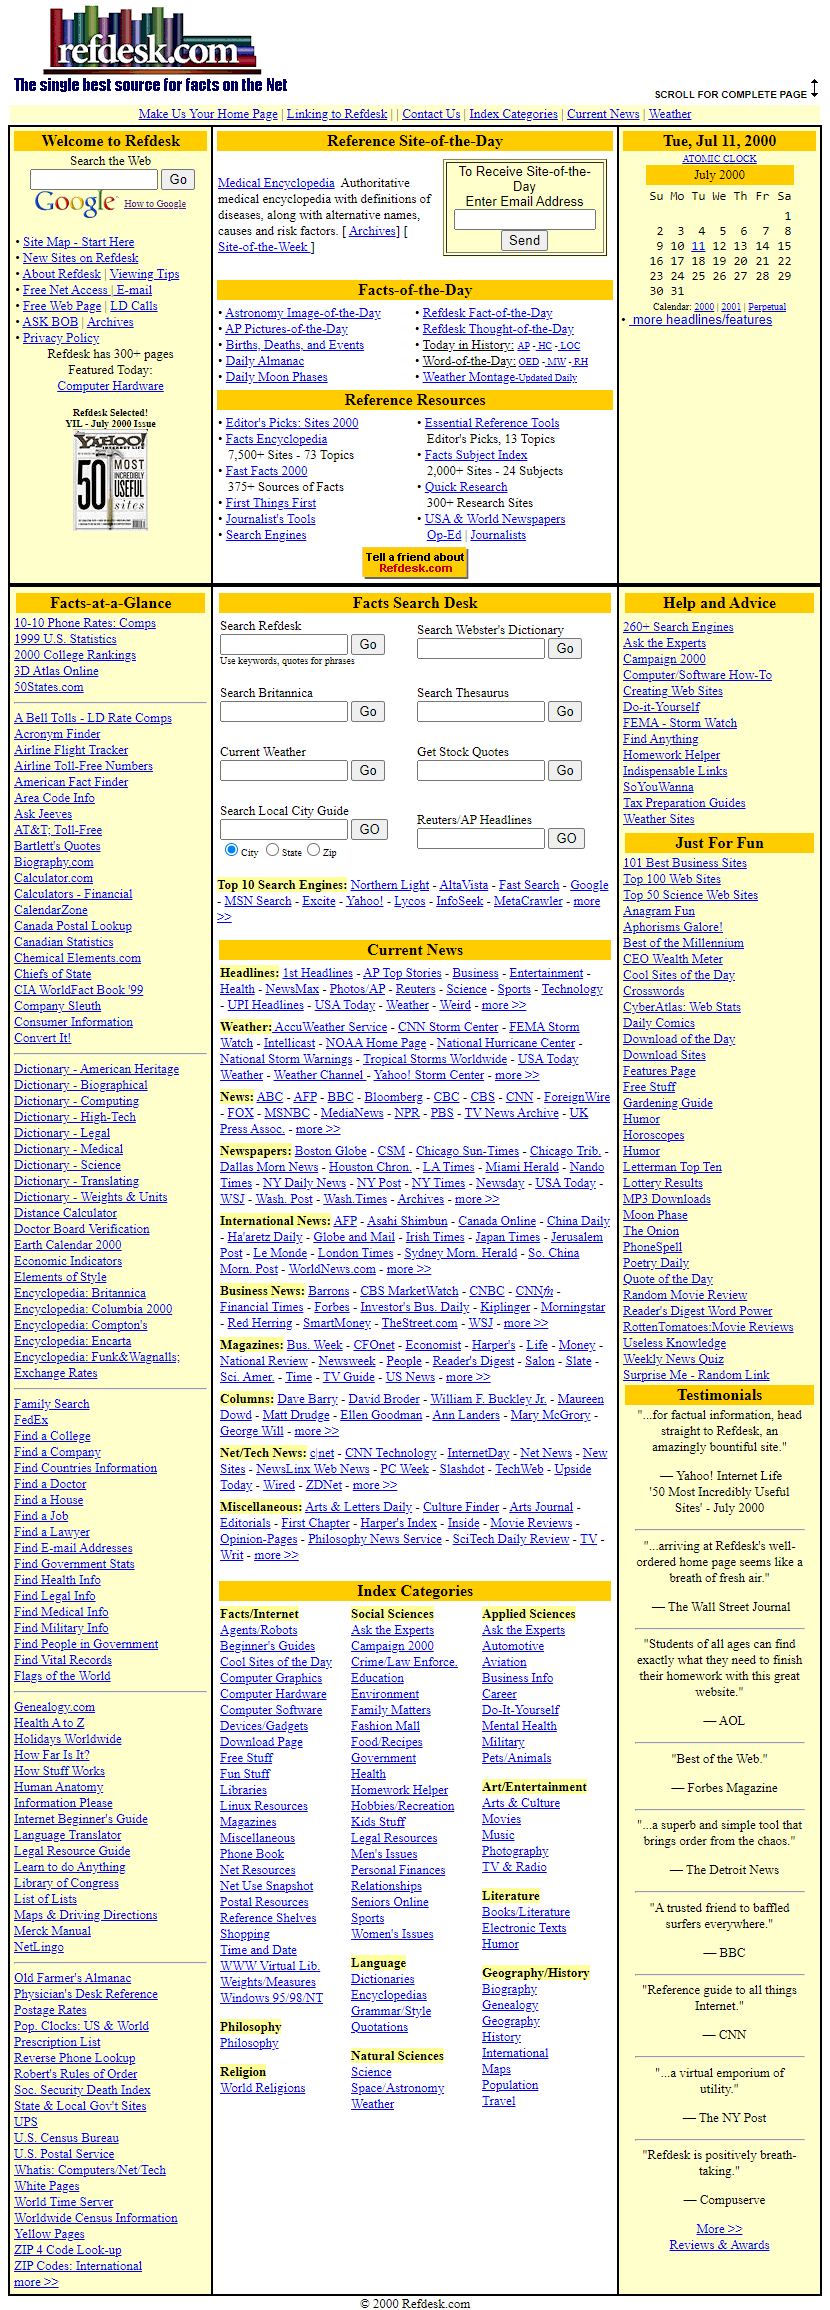 Refdesk.com website in 2000